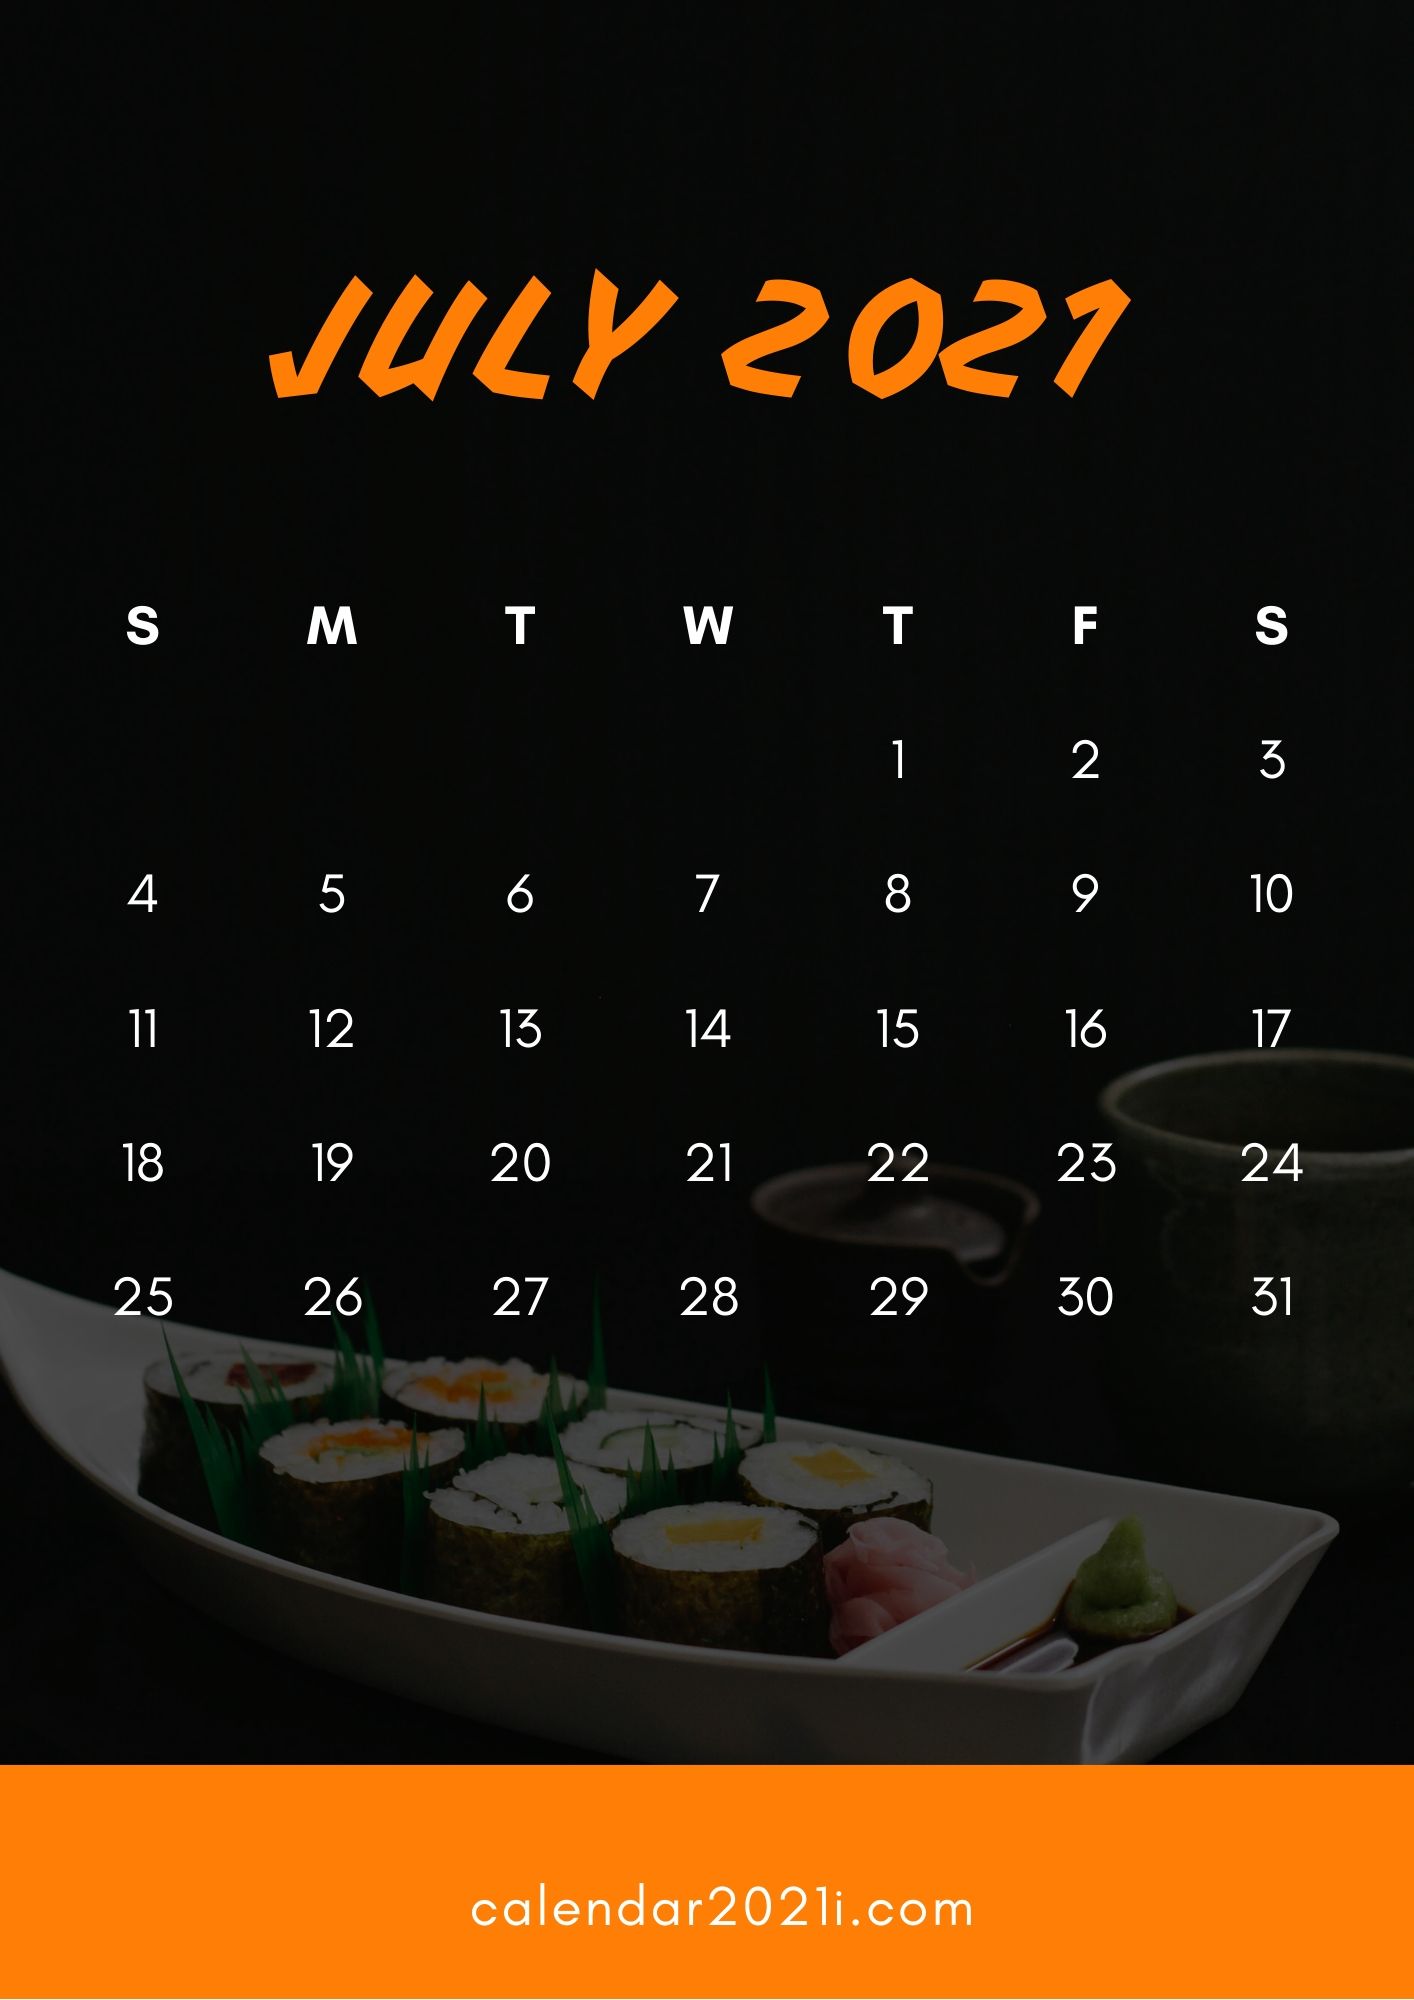 July 2021 iPhone Calendar Wallpaper